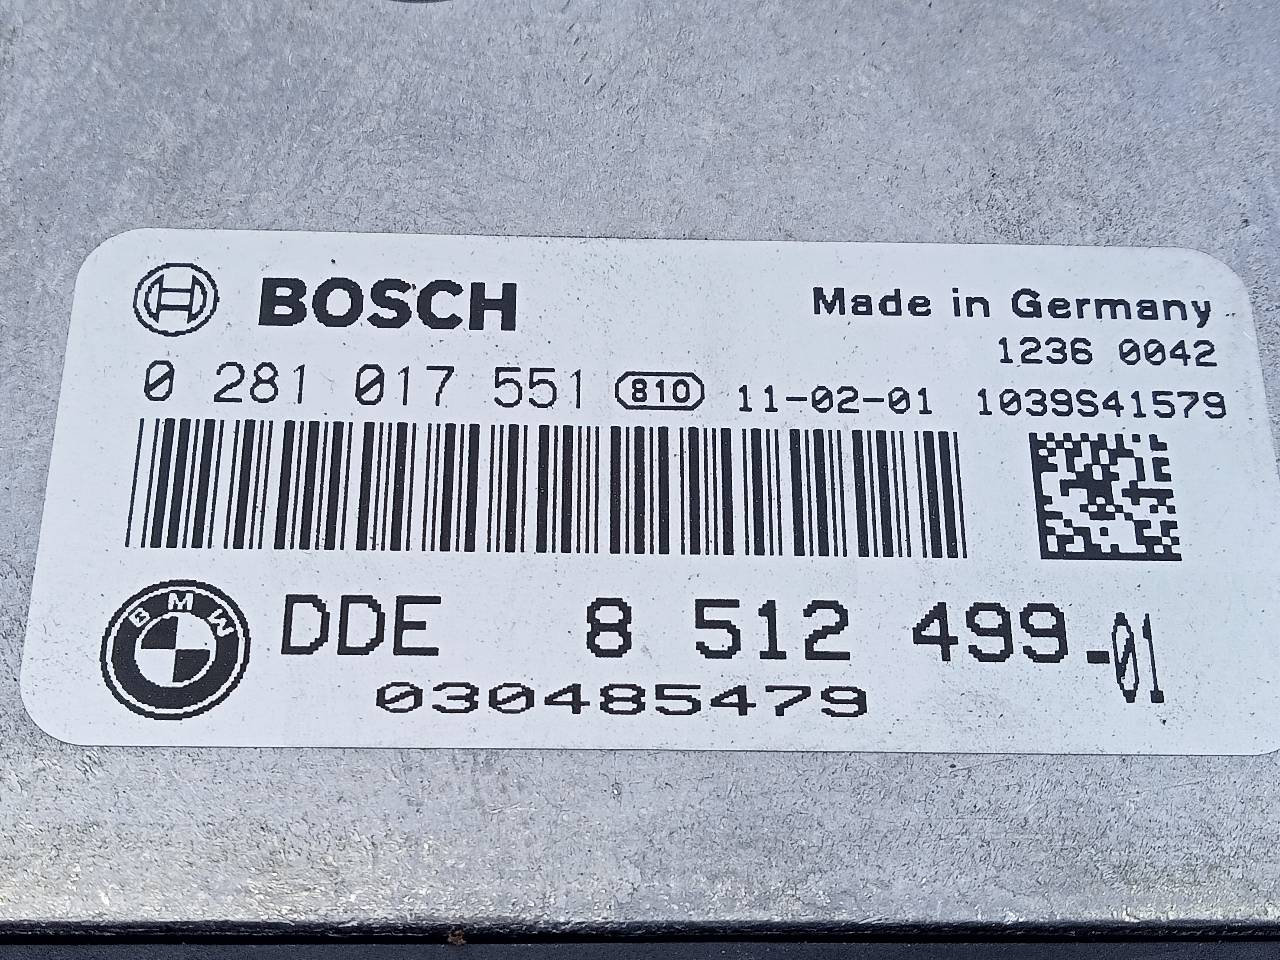 BMW X1 E84 (2009-2015) Блок управления двигателем 8512499, 0281017551, E3-A2-31-3 23301496